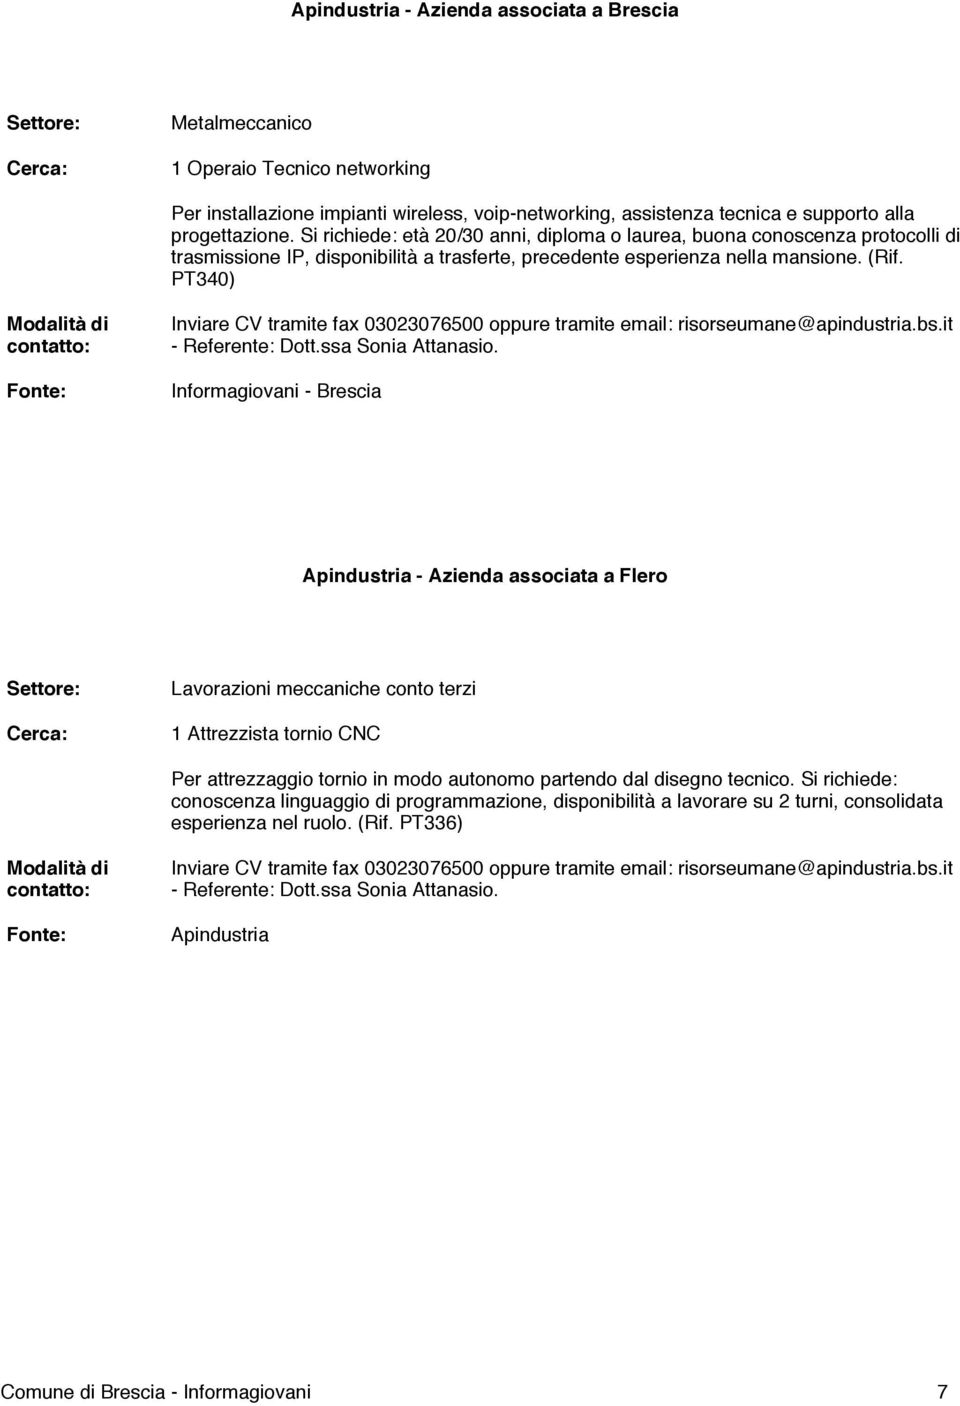 PT340) Inviare CV tramite fax 03023076500 oppure tramite email: risorseumane@apindustria.bs.it - Referente: Dott.ssa Sonia Attanasio.